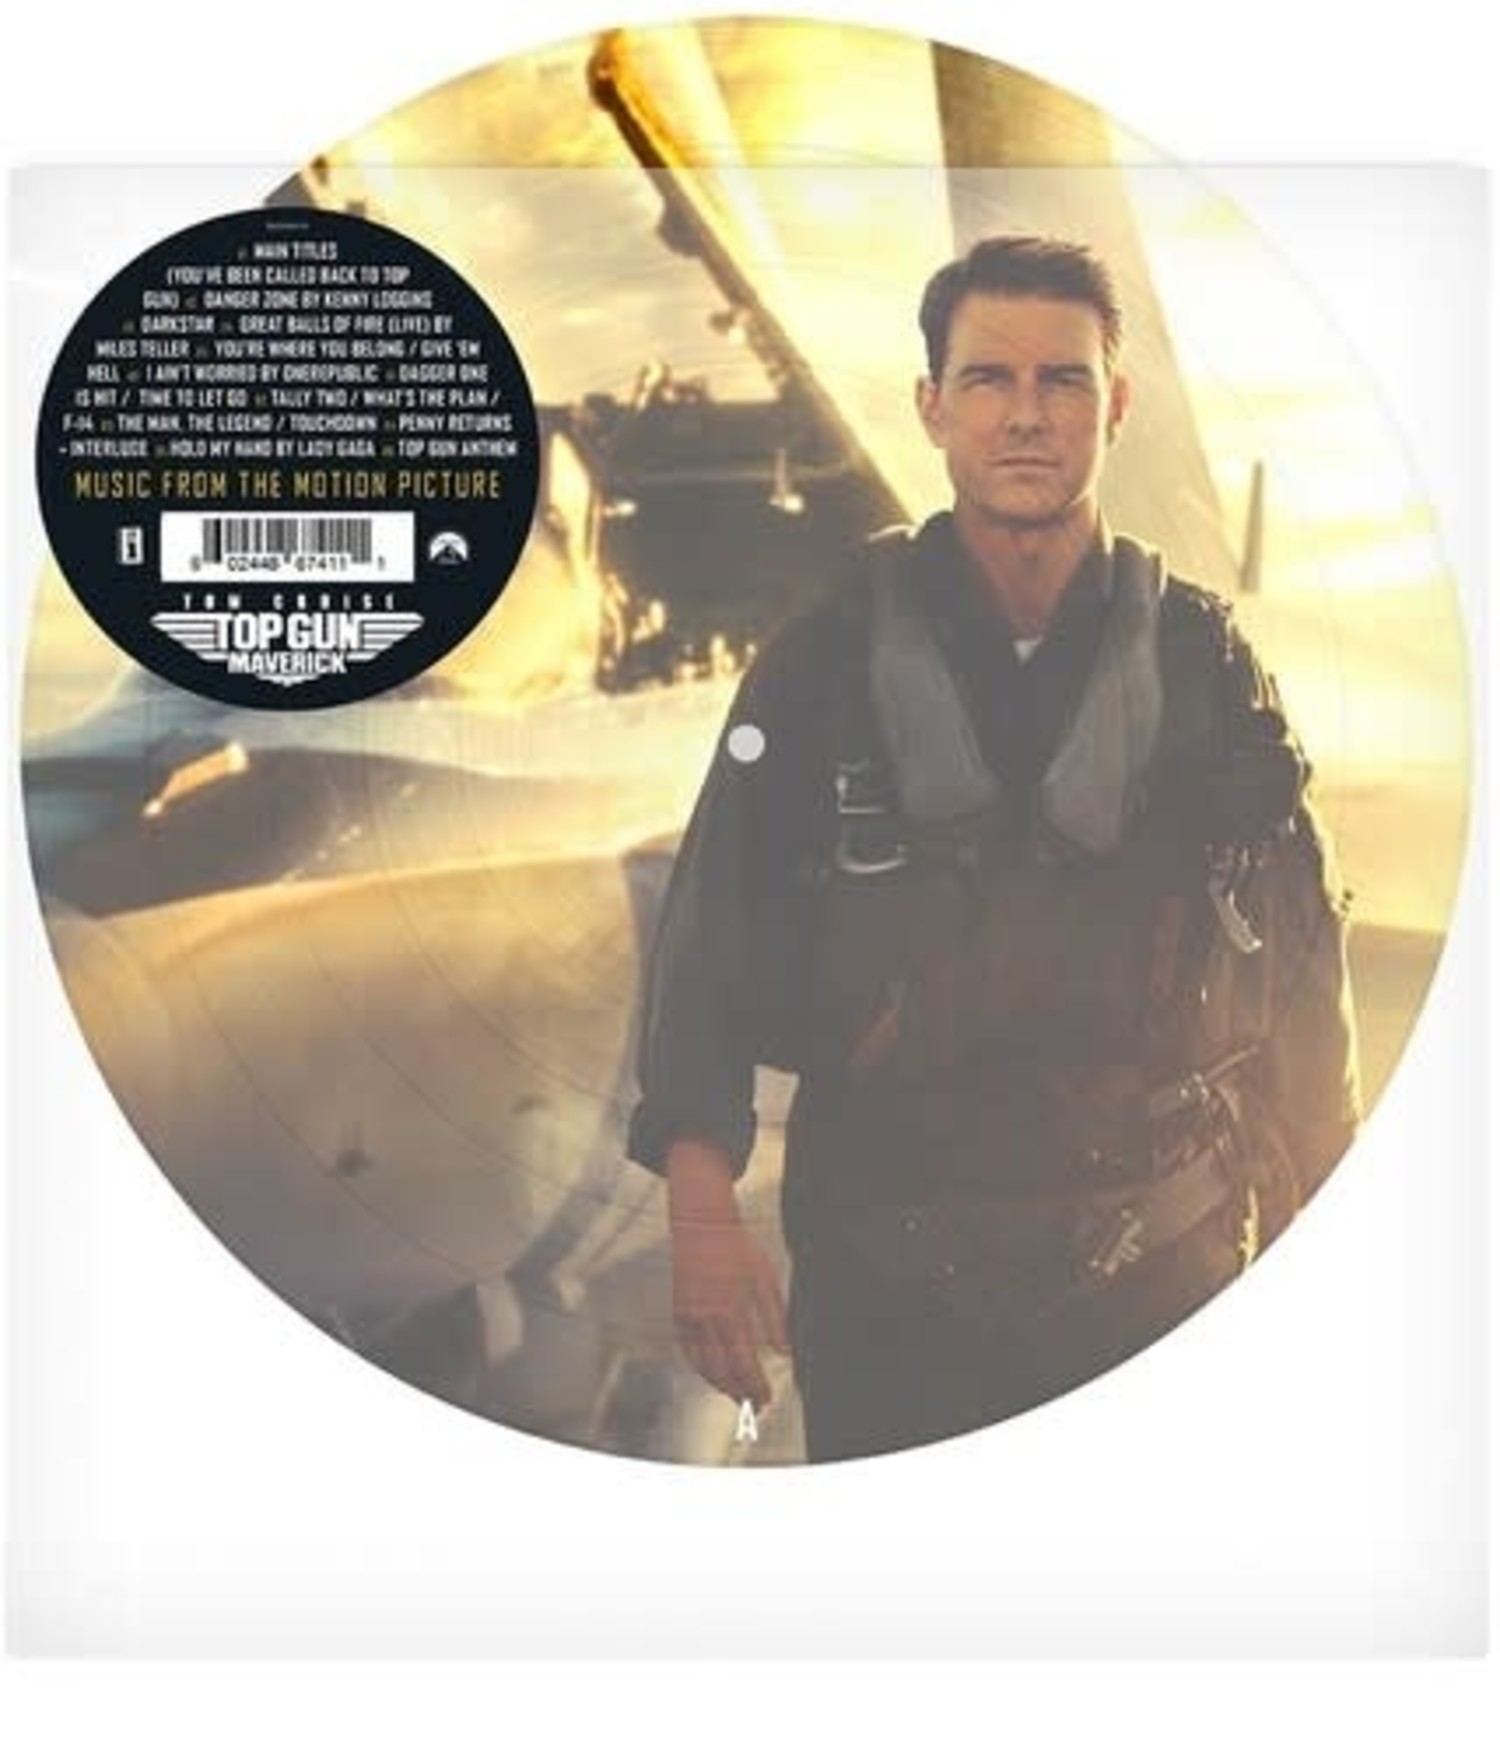 Top Gun: Maverick - Soundtrack (picture disc) - Wax Trax Records